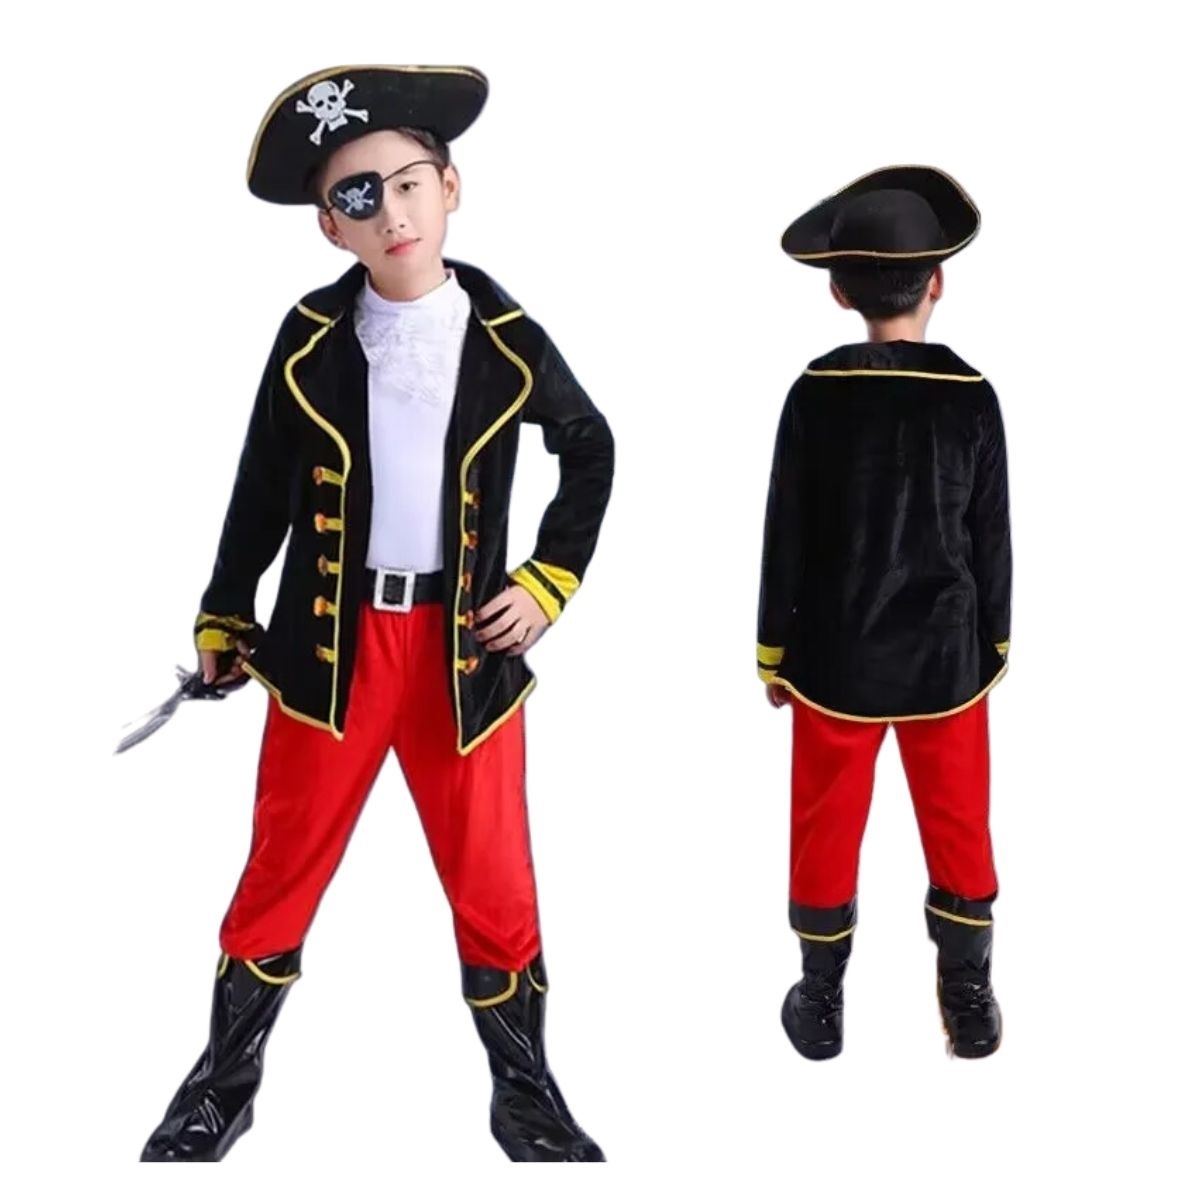 Fantasia Pirata Infantil Masculino Menino Criança 2 a 8 anos